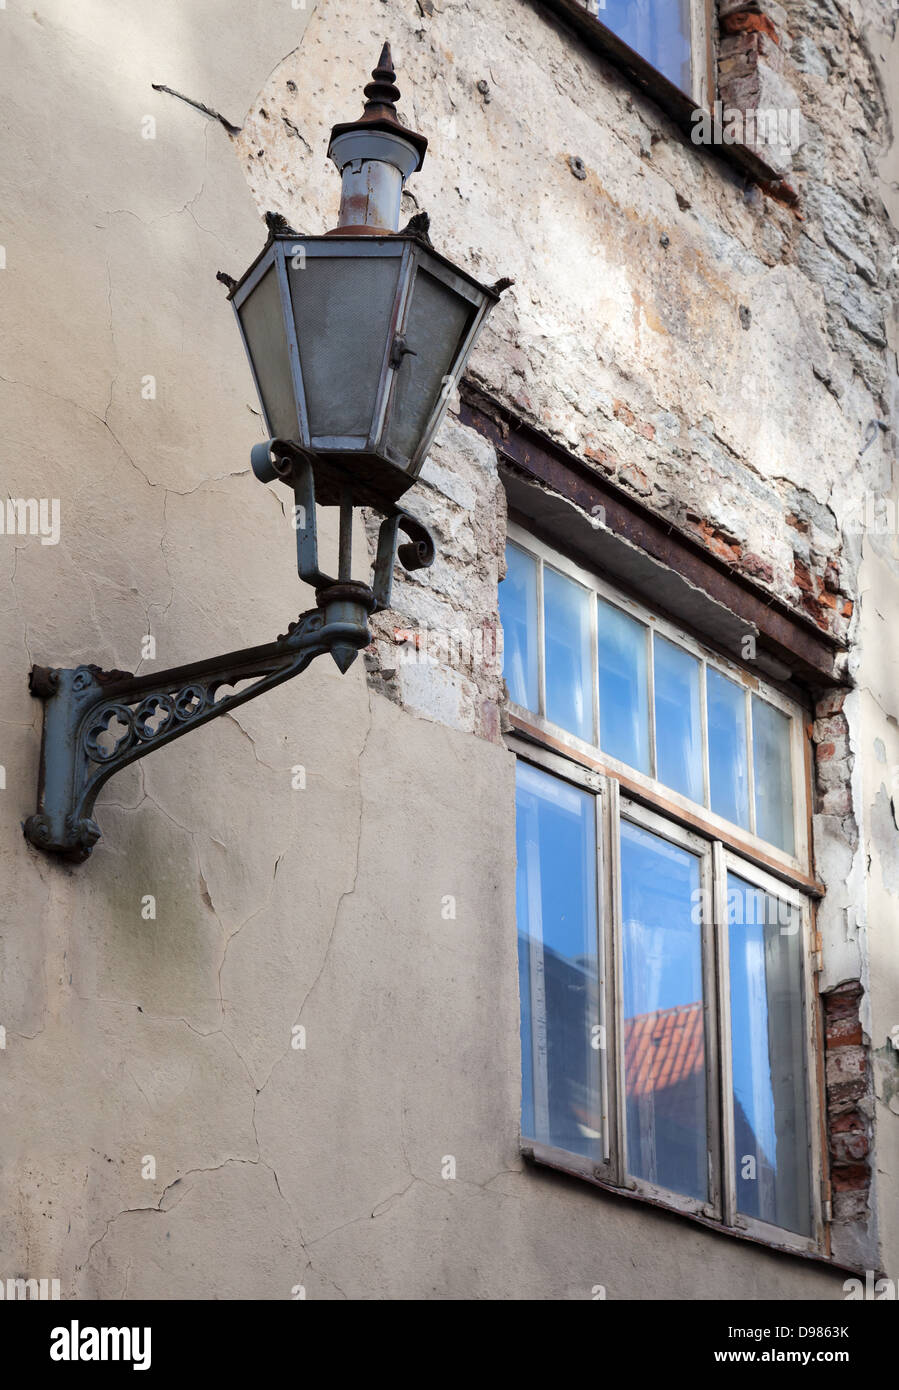 Old street lamp lantern on a weathered wall in Tallinn, Estonia Stock Photo